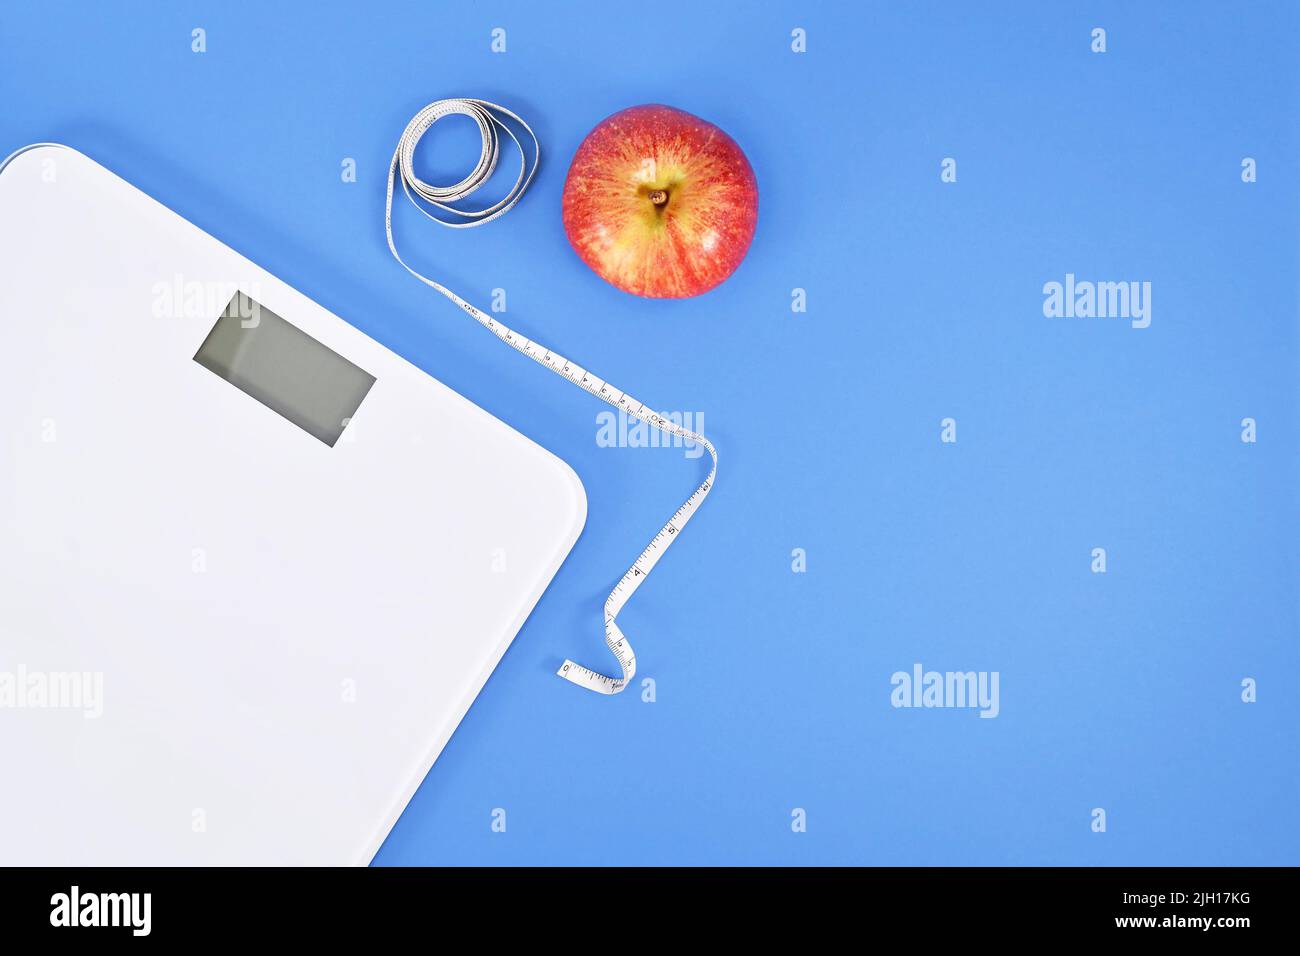 Concept de dieting avec échelle, ruban de mesure et pomme sur fond bleu avec espace de copie Banque D'Images